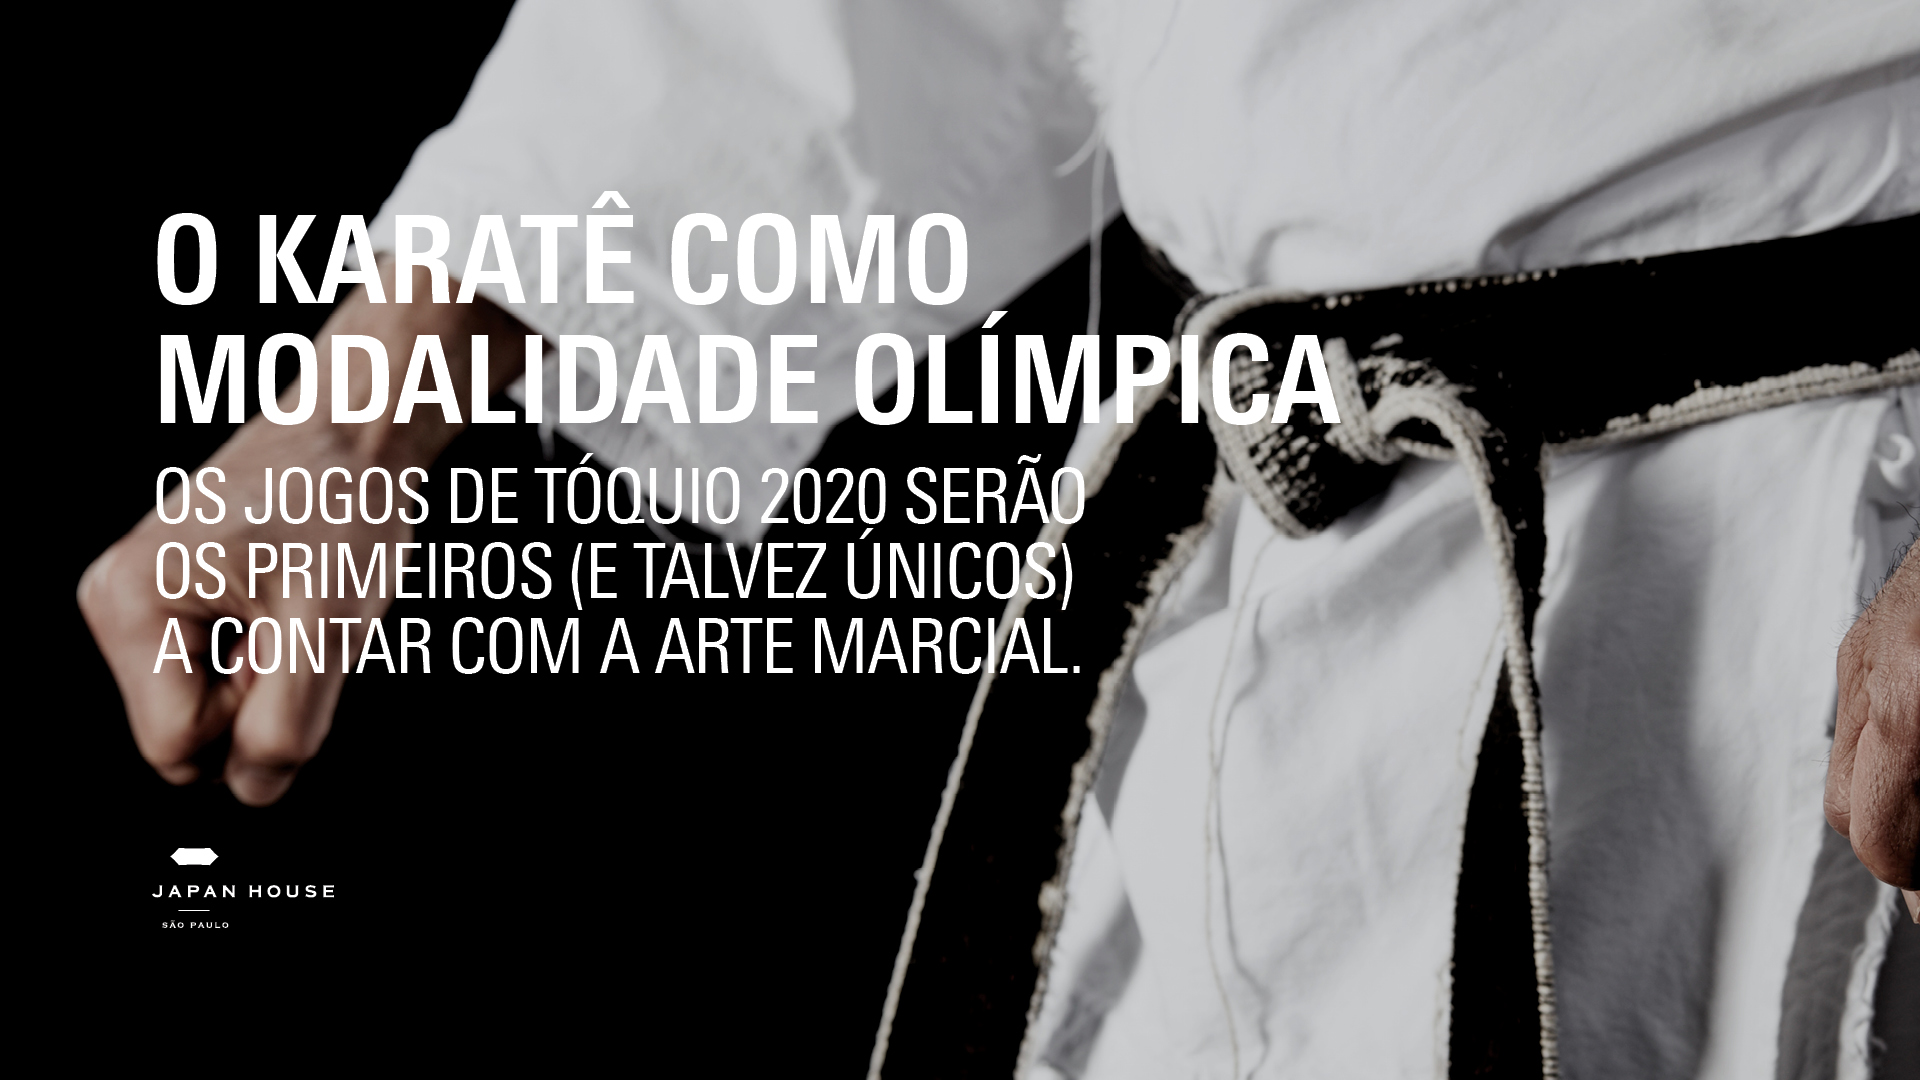 O karatê como modalidade olímpica: Os Jogos Olímpicos deste ano serão os primeiros (e talvez únicos) a contar com a arte marcial.